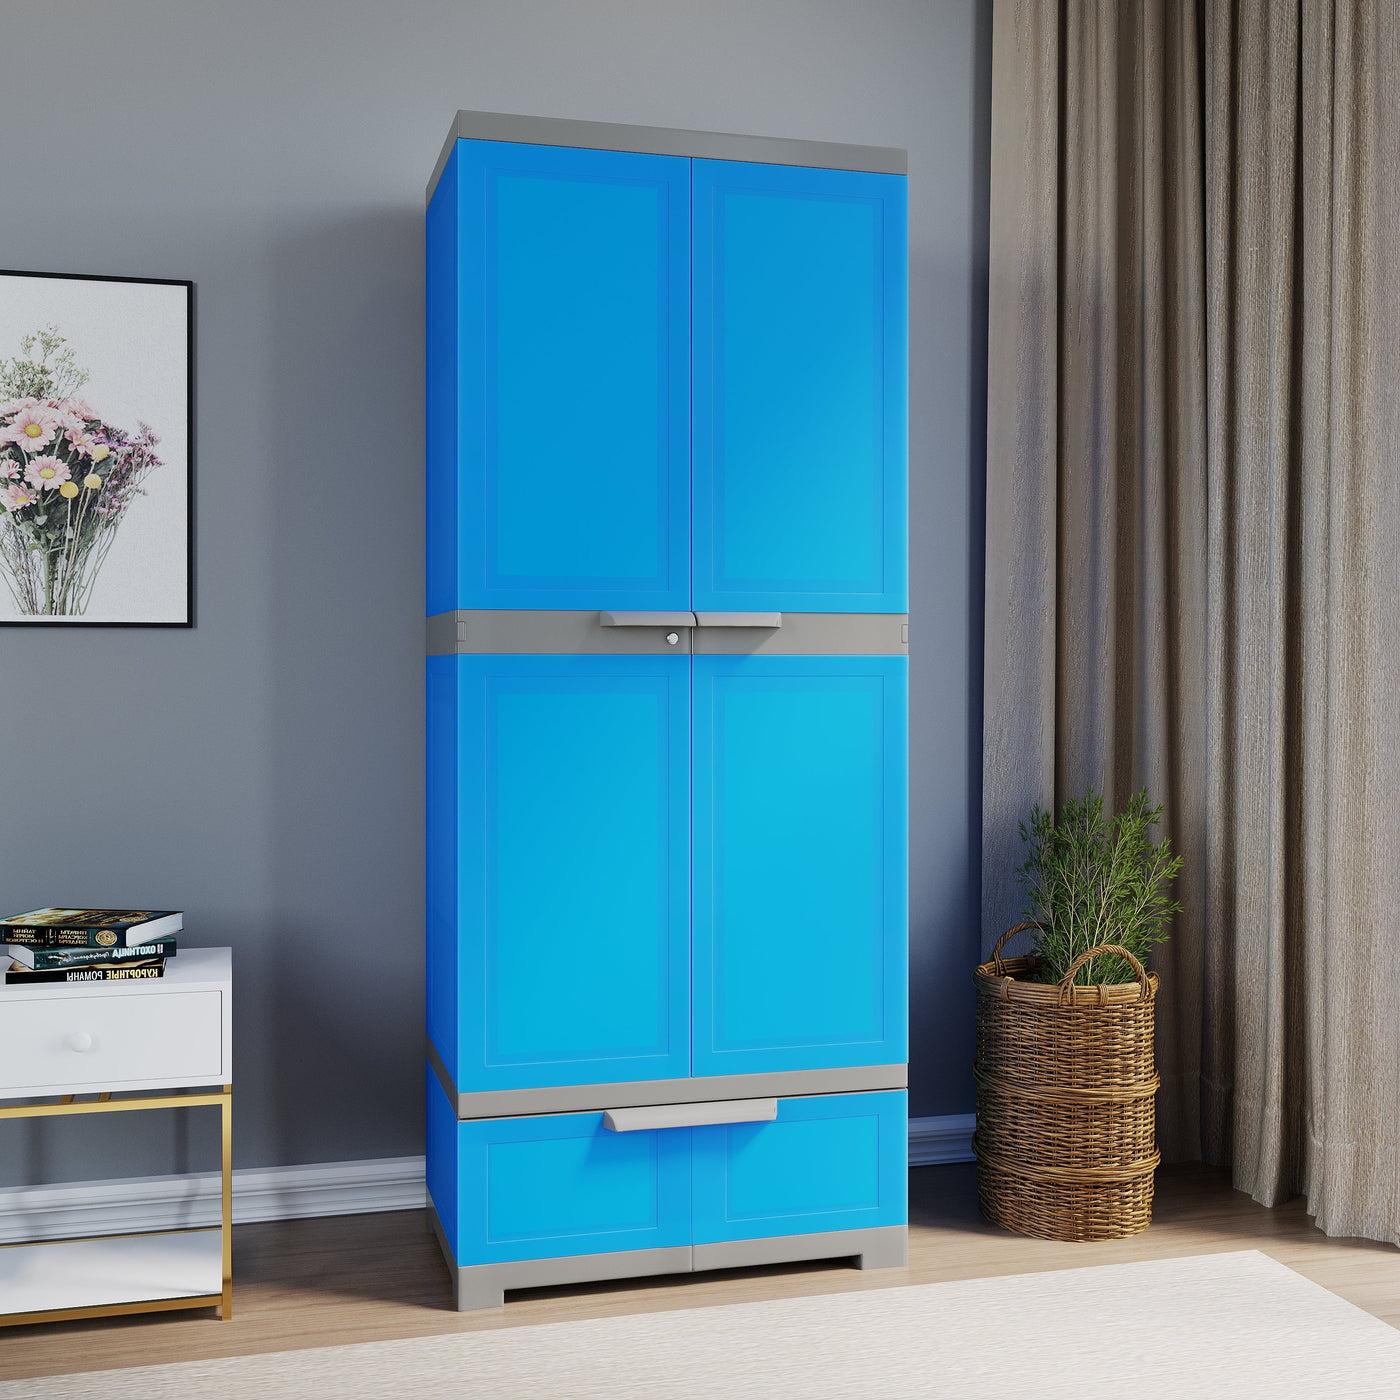 Nilkamal Freedom FMDR 1B Plastic Storage Cabinet with 1 Drawer (Deep Blue / Grey)